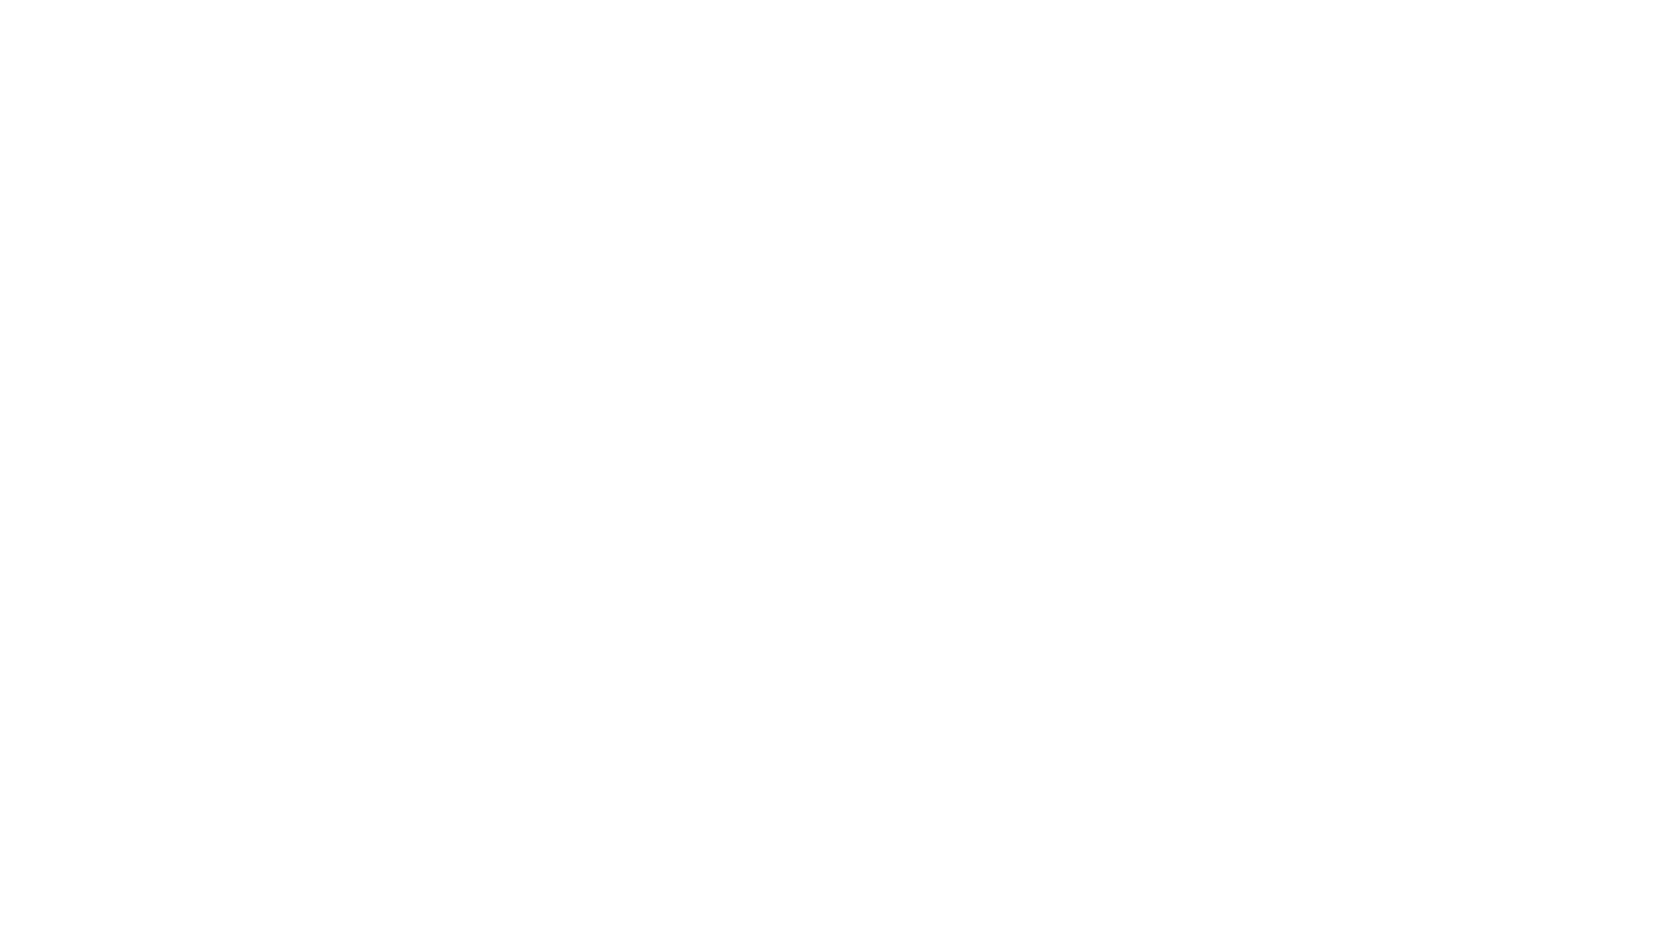 Bruce's Art